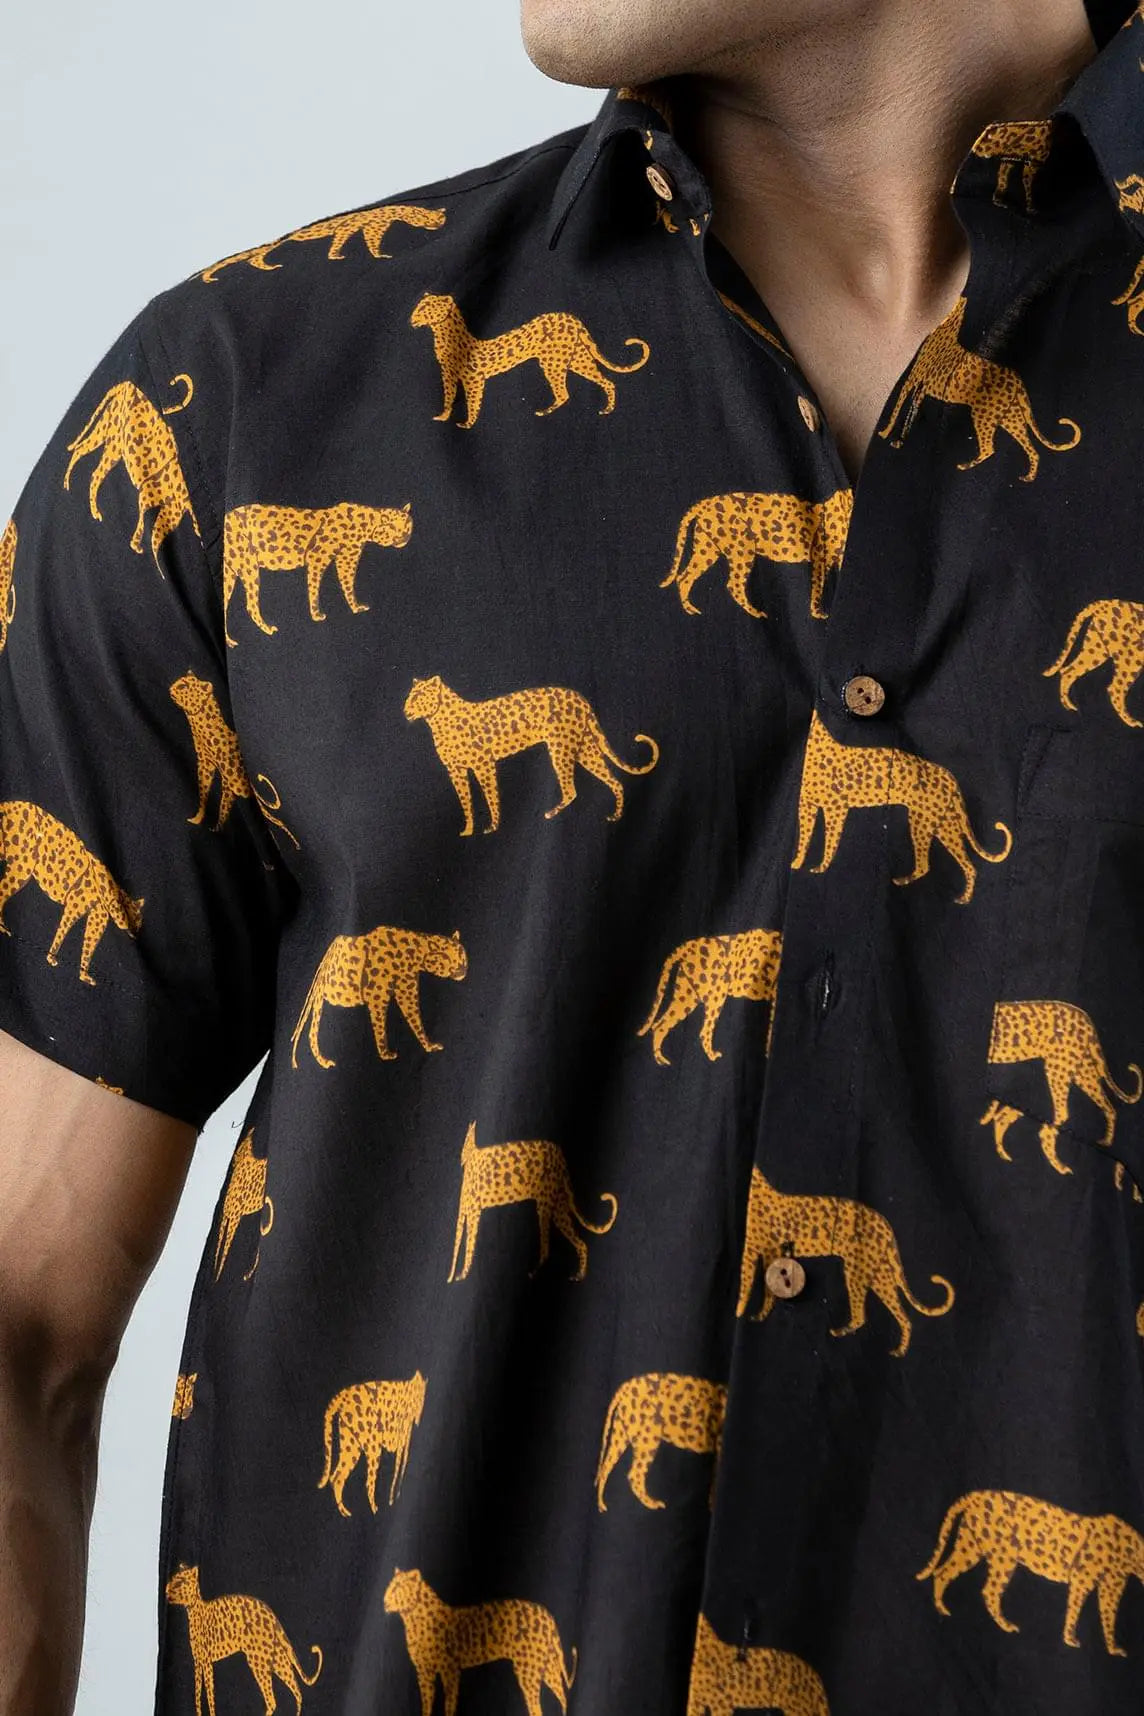 Firangi Yarn Block Printed Cotton Black Tiger Printed Shirt For Men